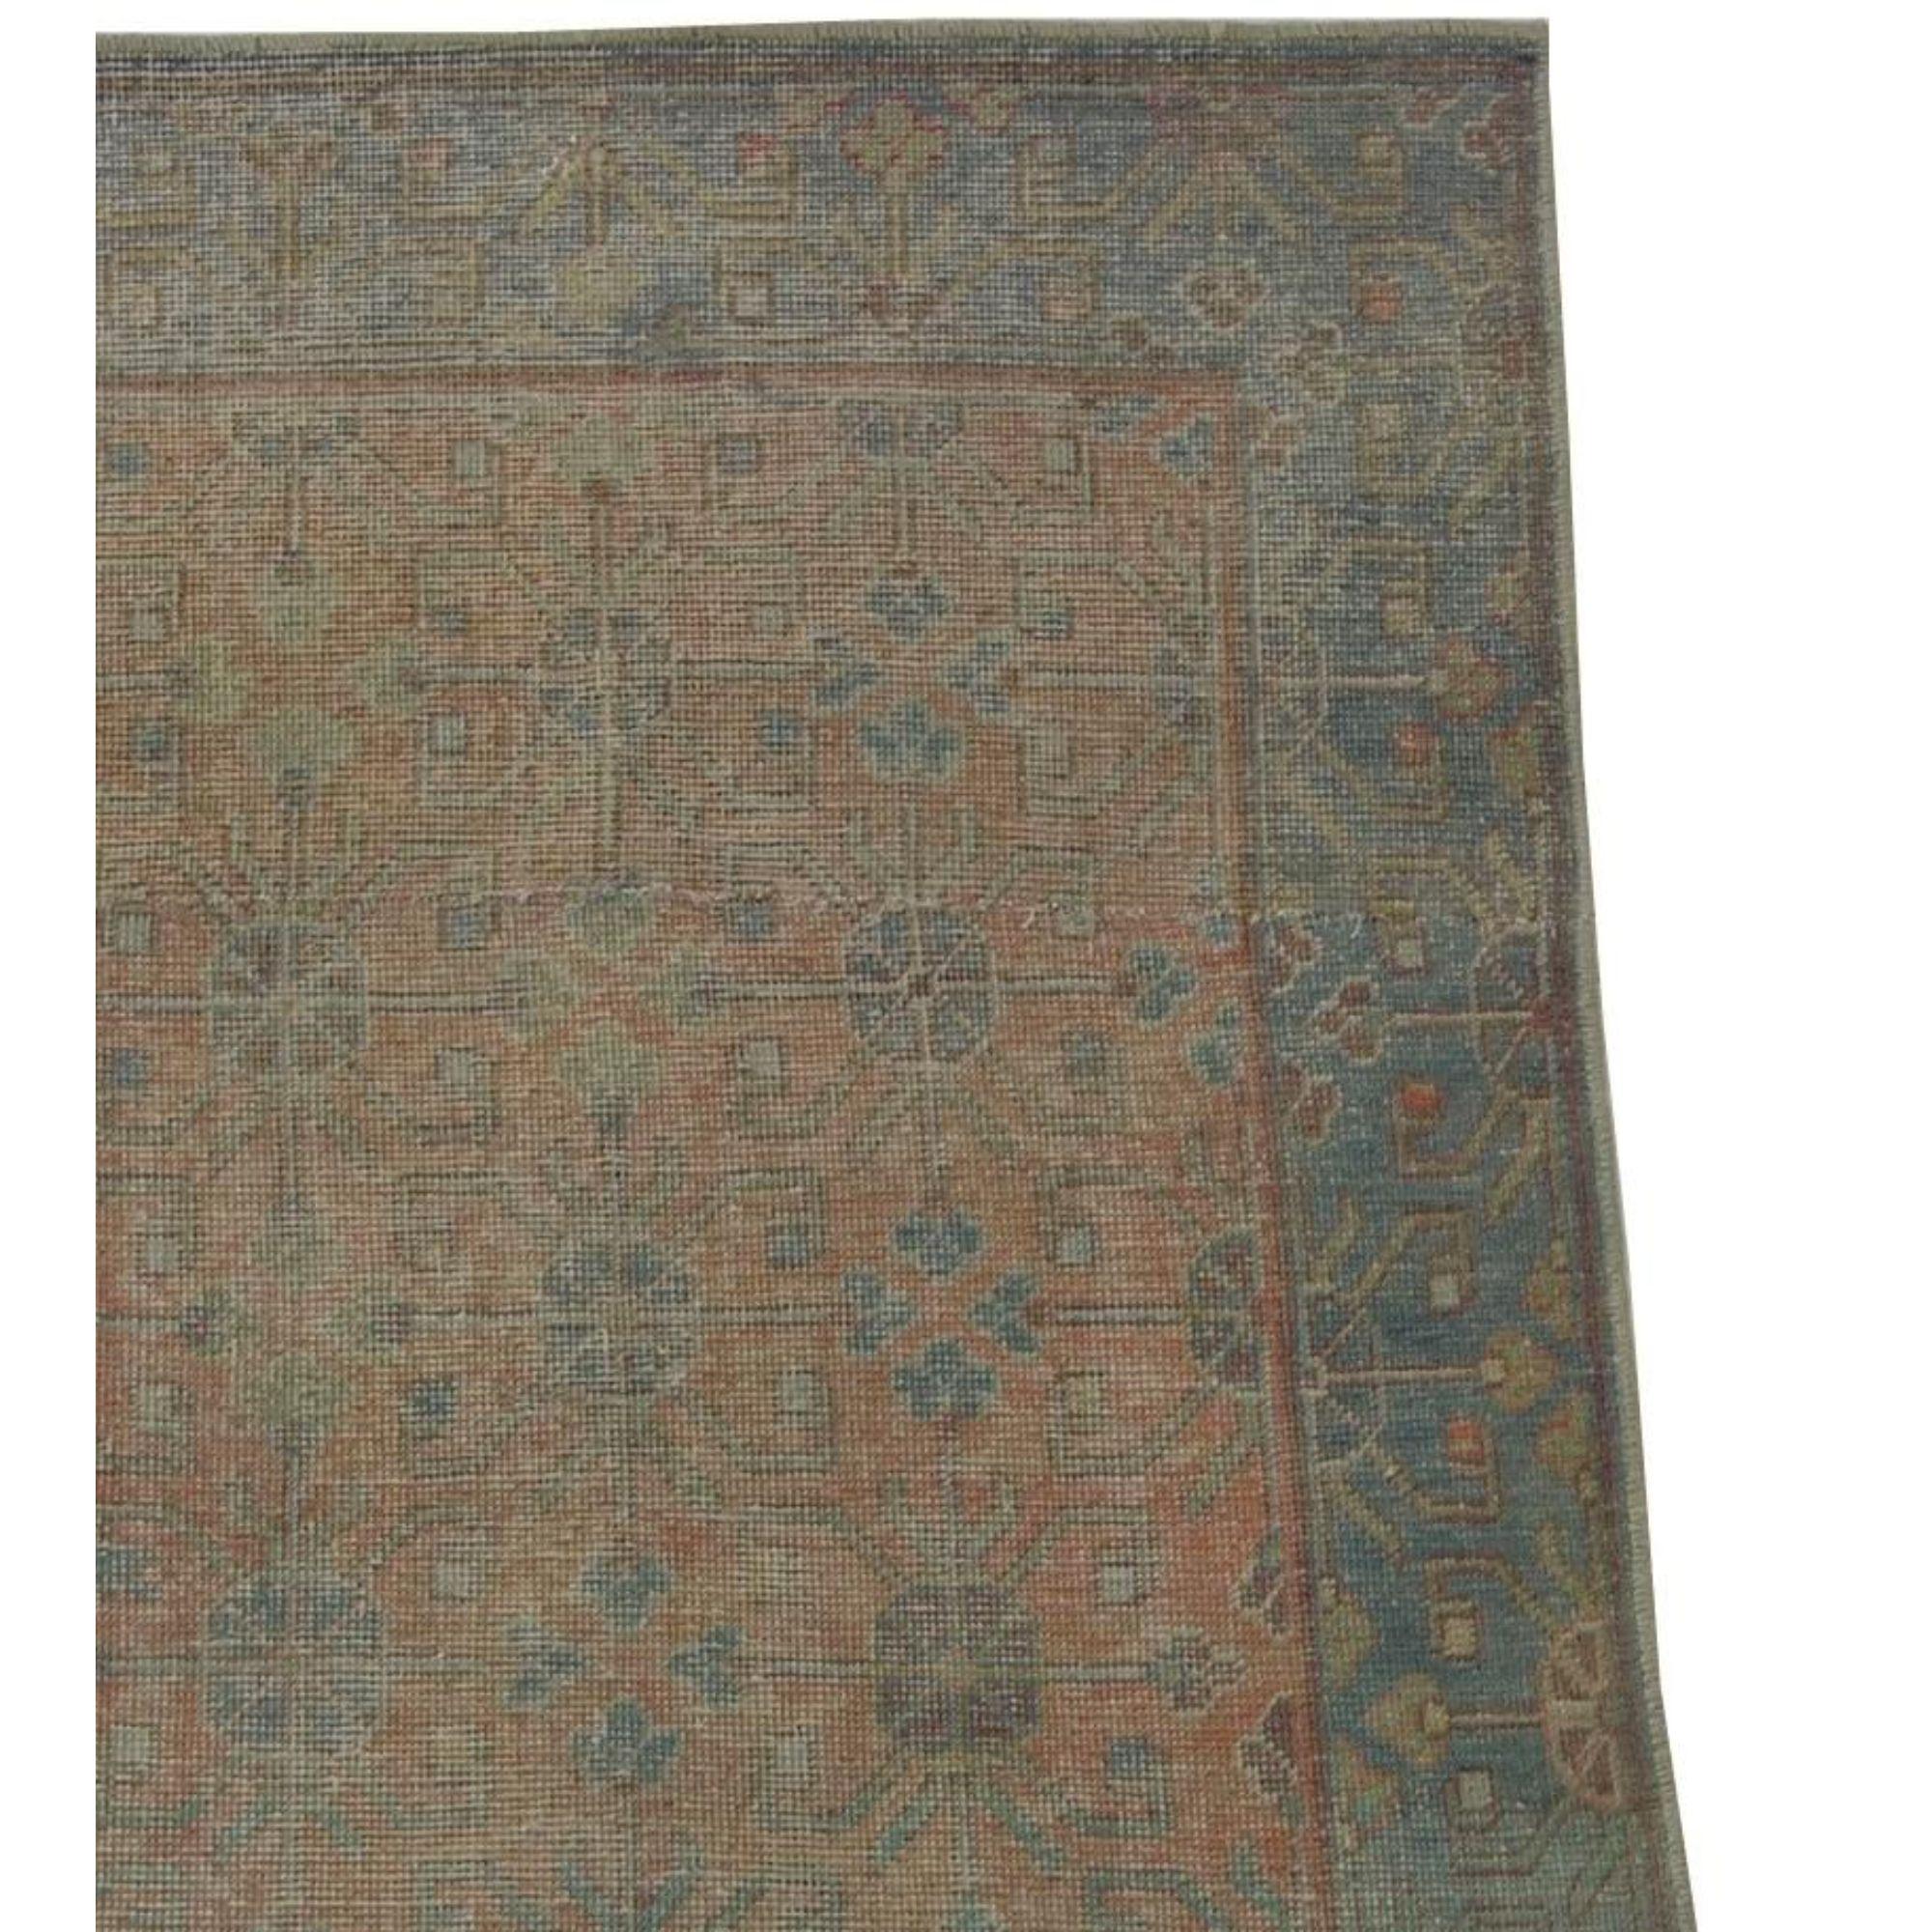 Up&Up est un tapis ancien de Samakhand. Il s'agit d'un tapis de style tribal ouzbek avec un motif rouge sur l'ensemble du tapis.